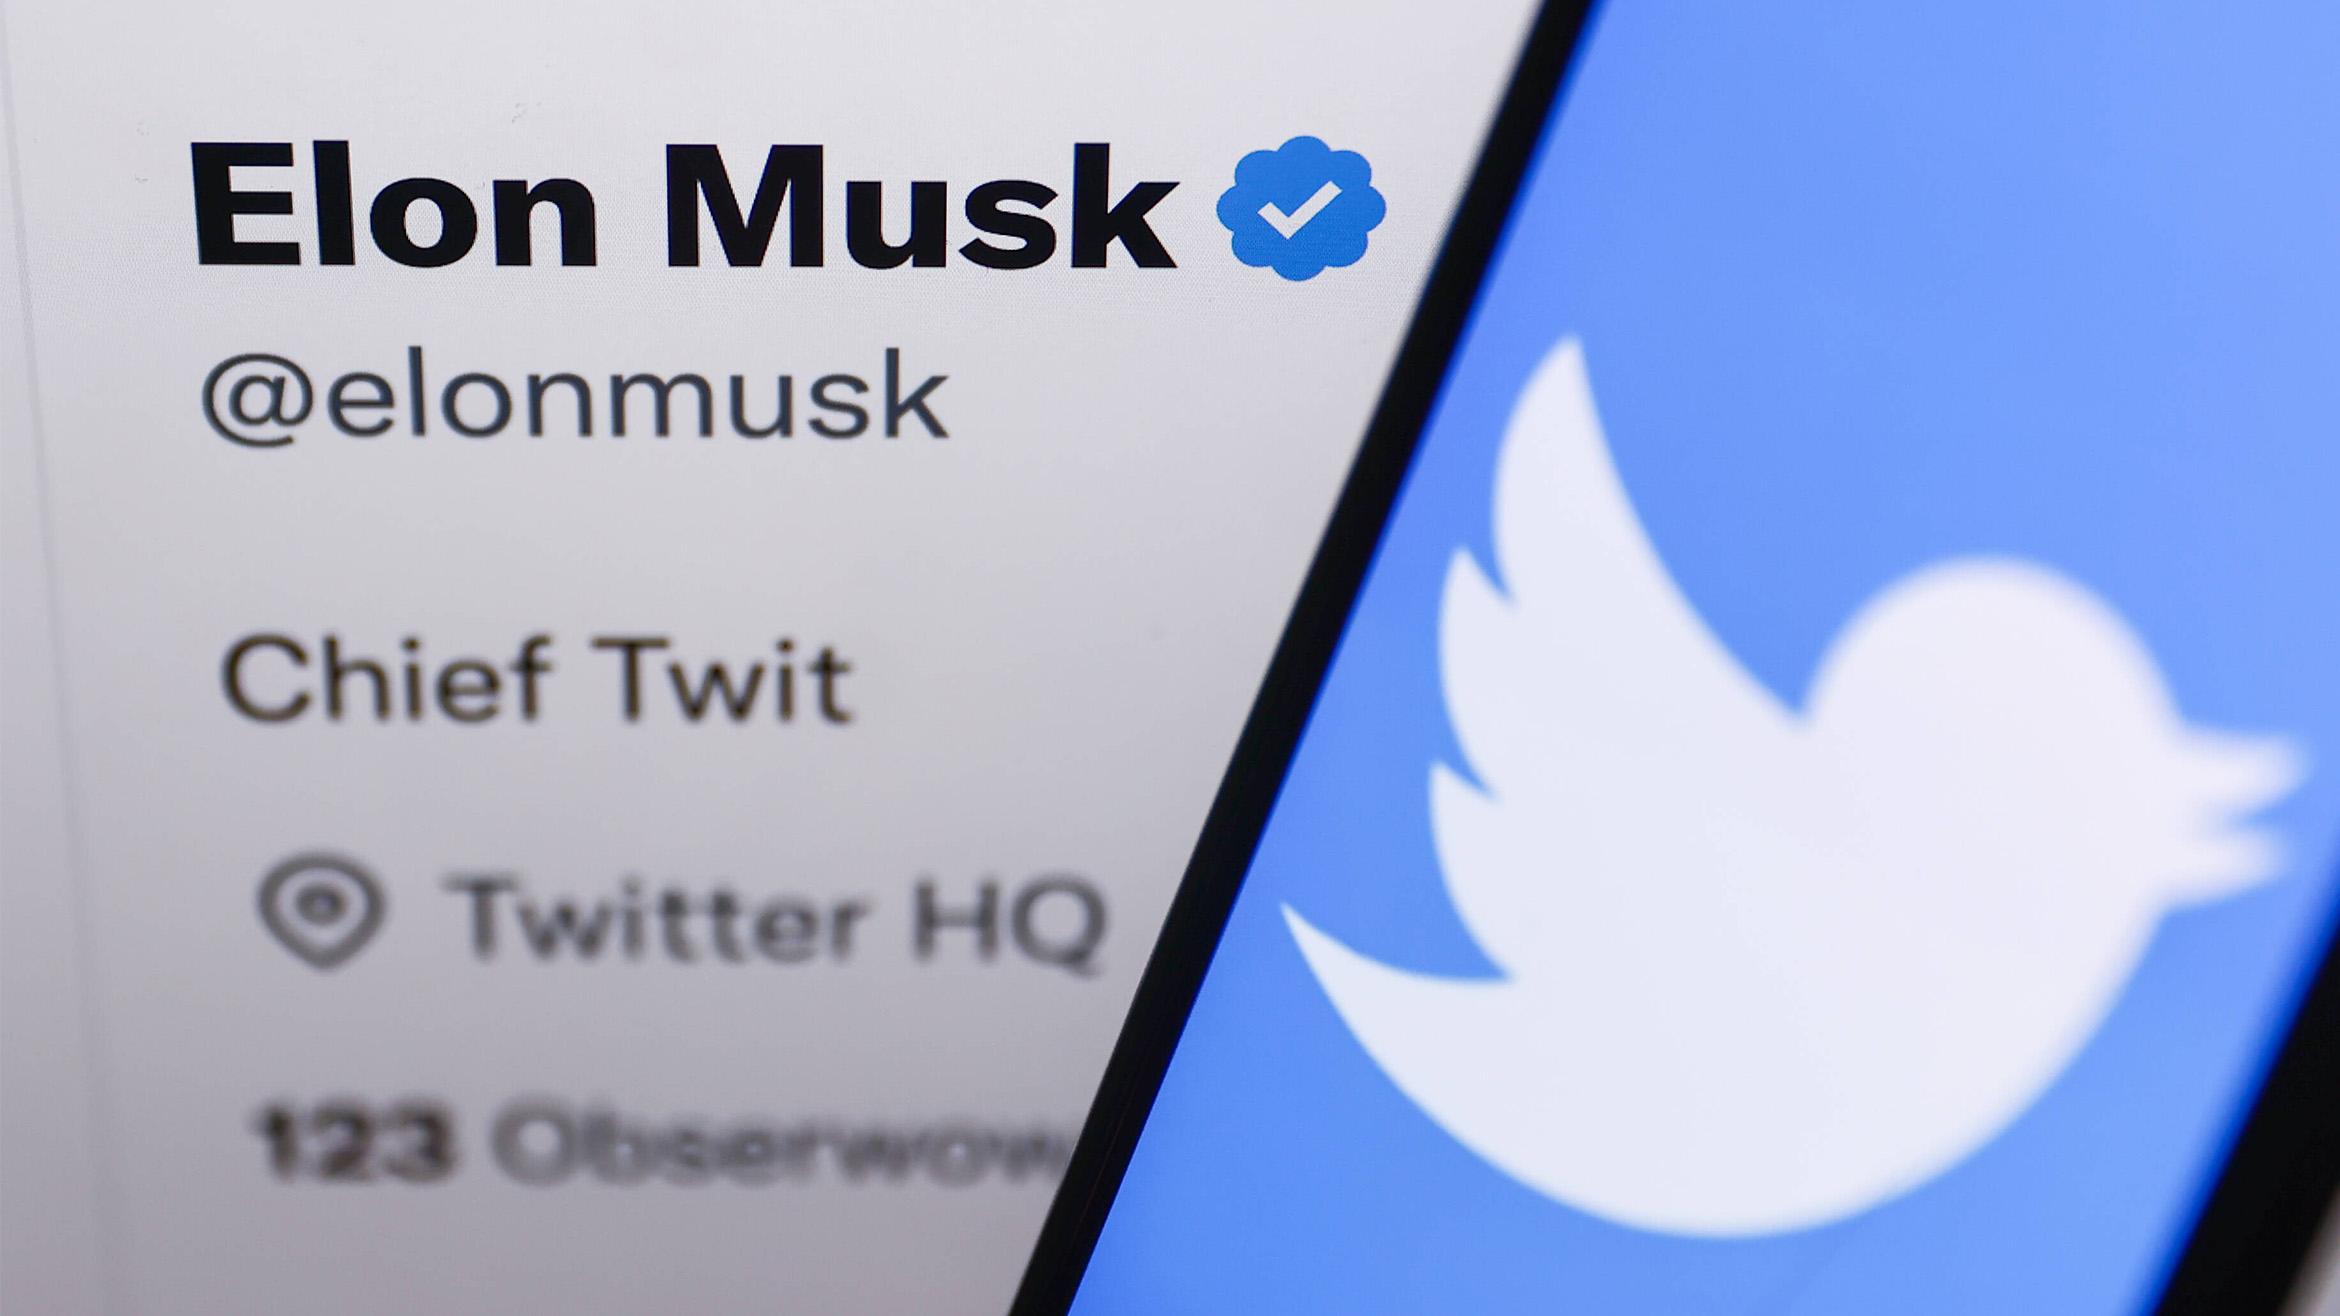 Elon Musk bezeichnet sich auf Twitter selbst als "Chief Twit" -